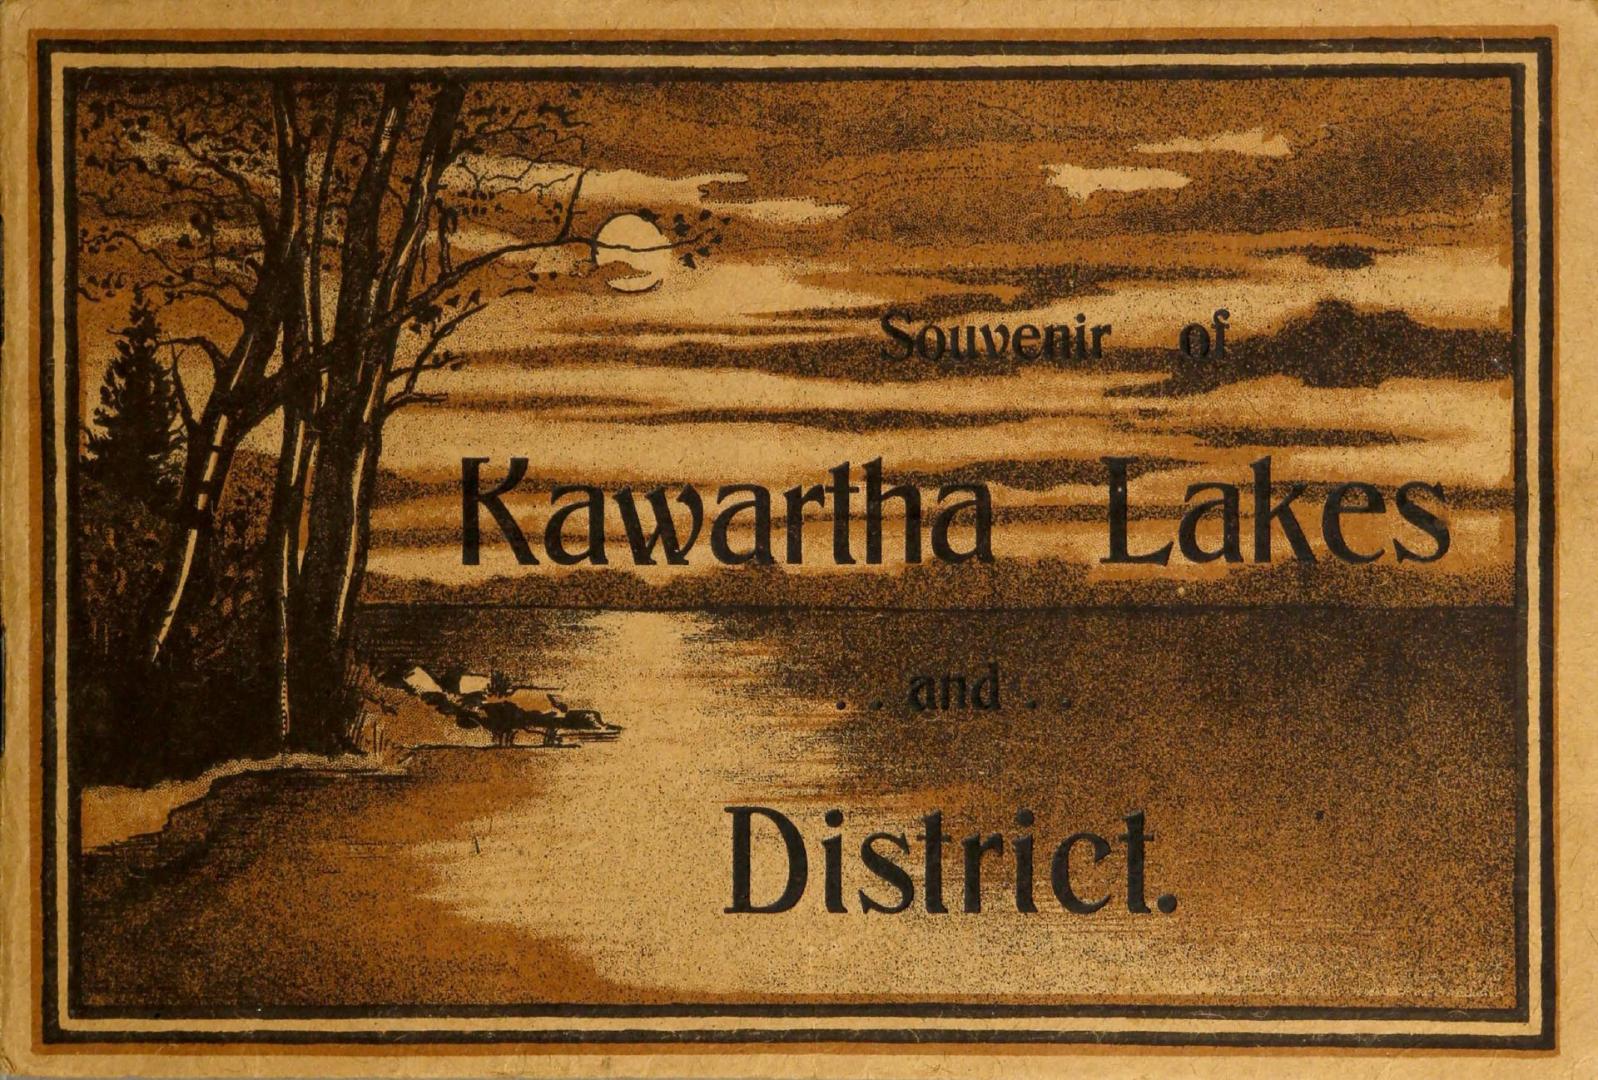 Souvenir of Kawartha Lakes and District